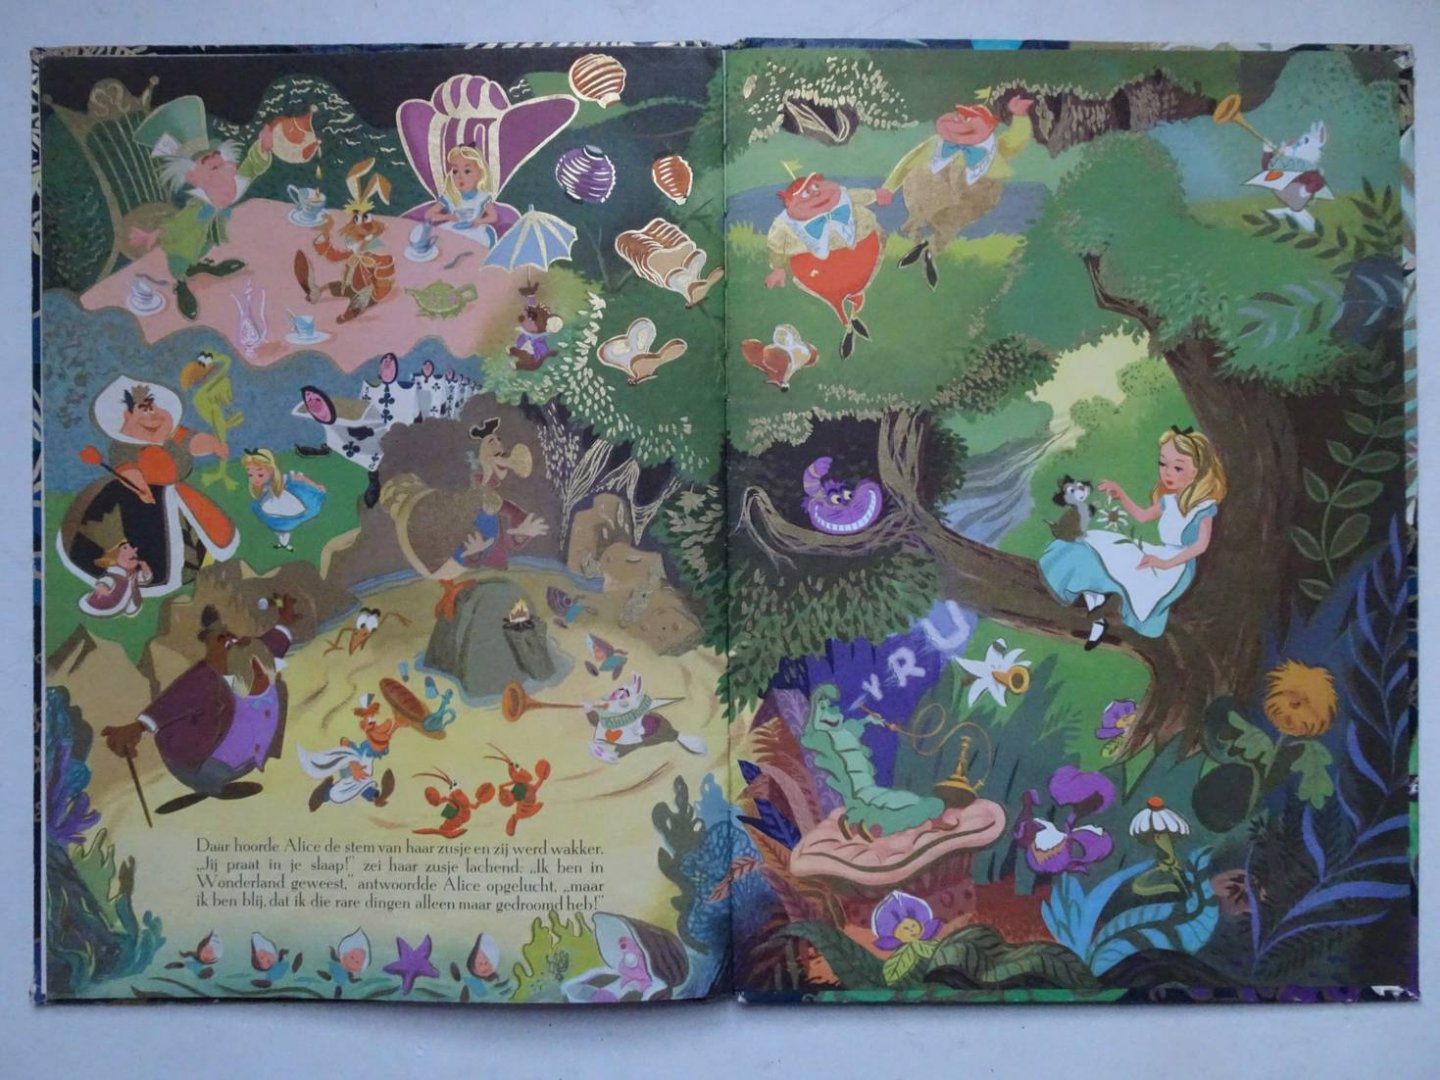 Disney, Walt. - Walt Disney's Alice in Wonderland. De avonturen van een klein meisje in een wonderlijke wereld. Met tekeningen van Walt Disney naar de film: "Alice in Wonderland". Een gouden "Margriet" boek.